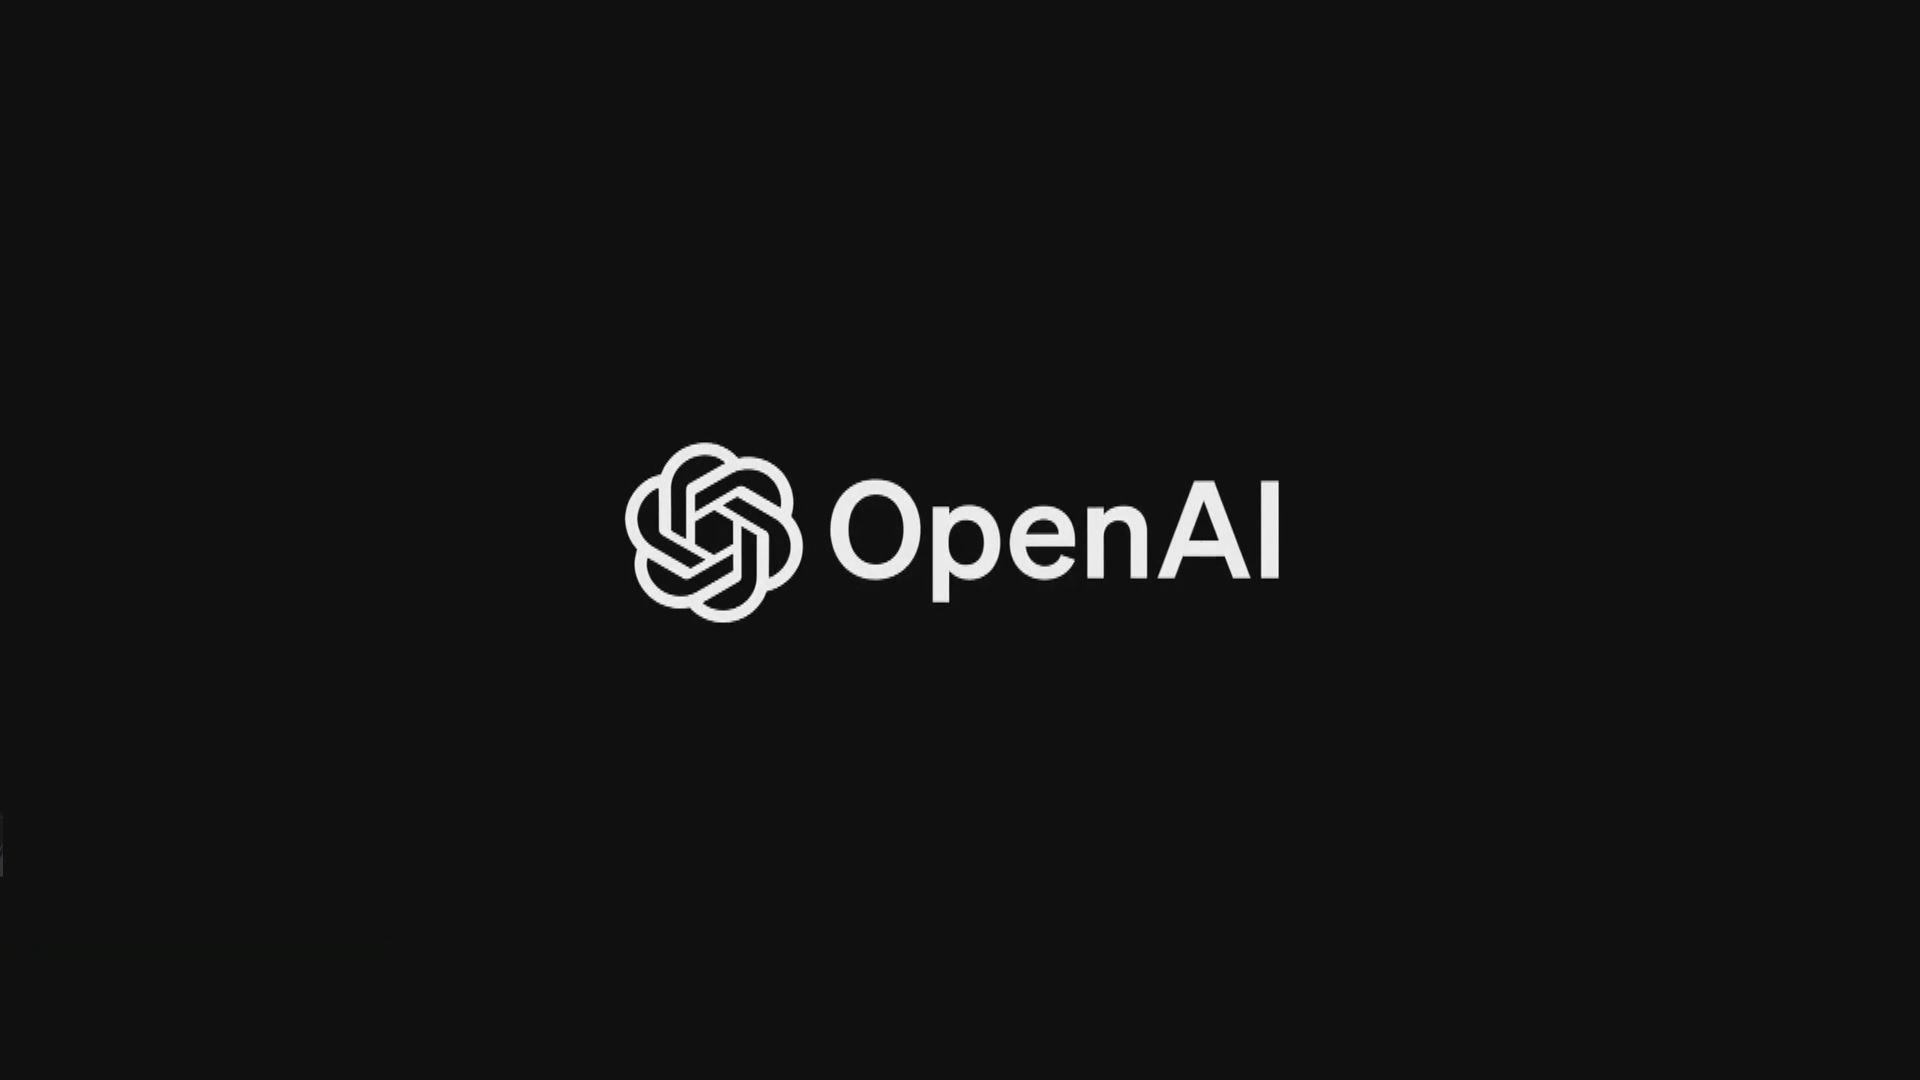 OpenAI發布最新人工智能系統GPT-4 能處理圖像